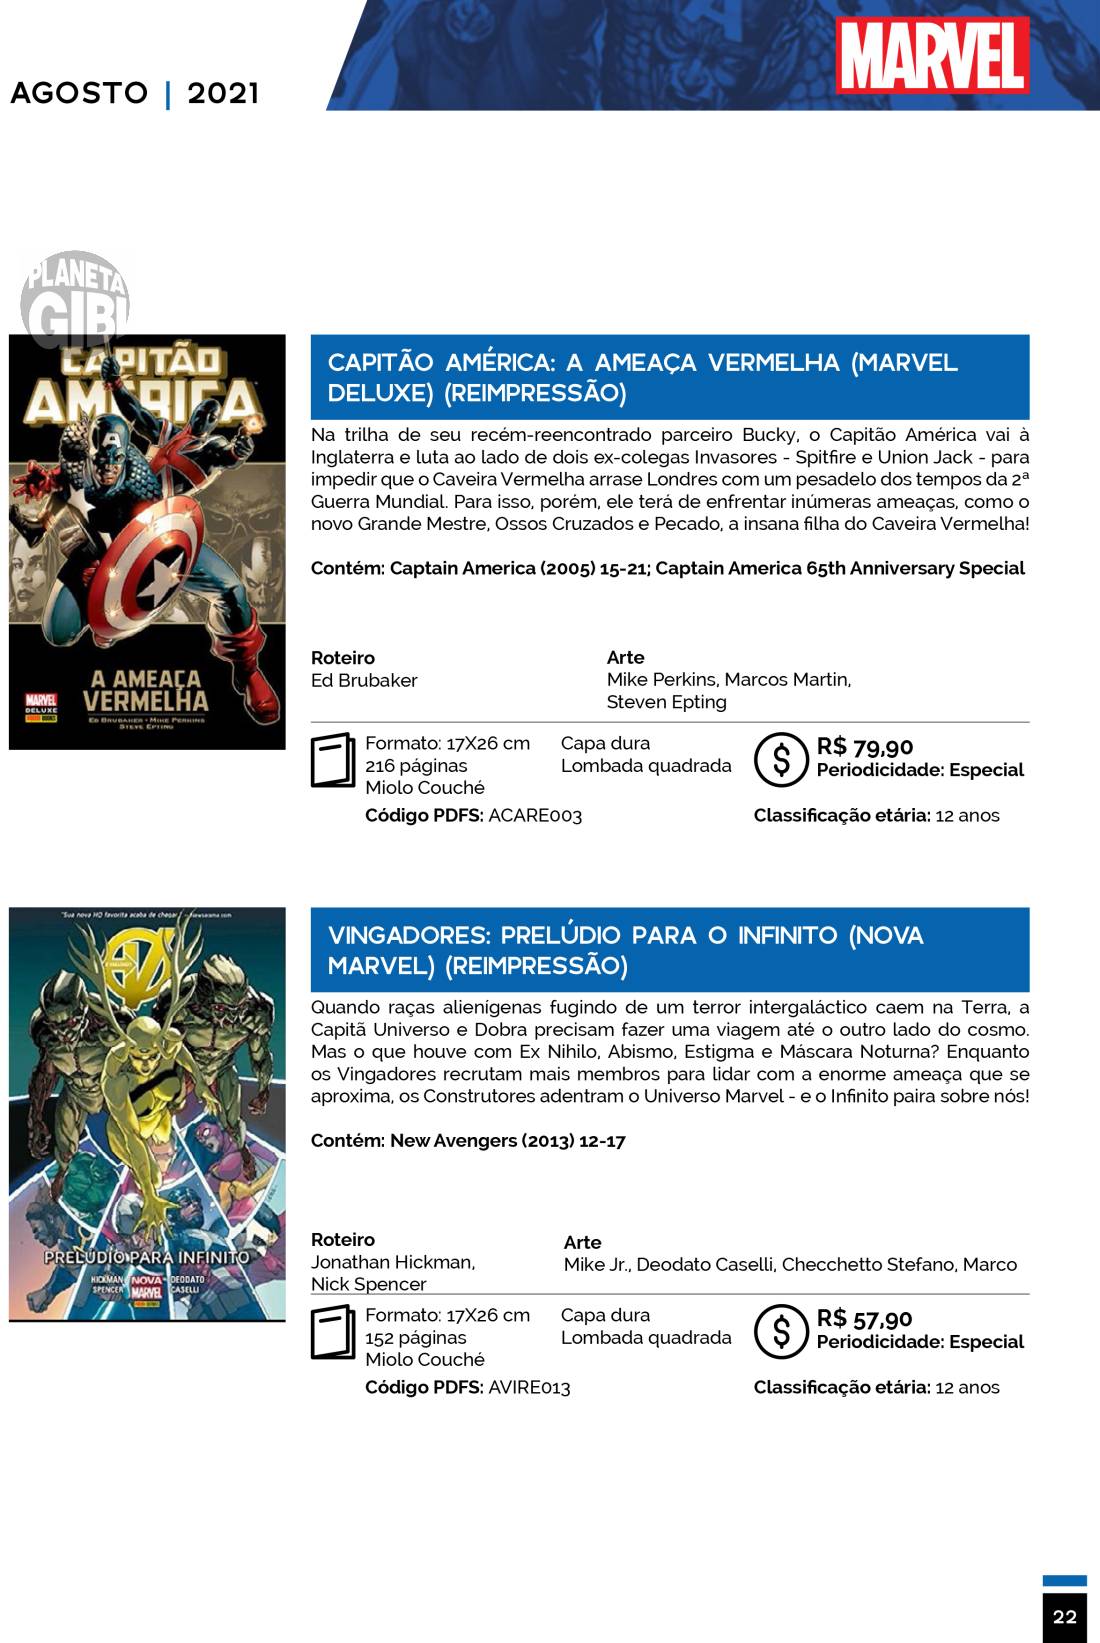 13 - Checklist Marvel/Panini (Julho/2020 - pág.09) - Página 9 Catalogo-Julho-Agosto-22